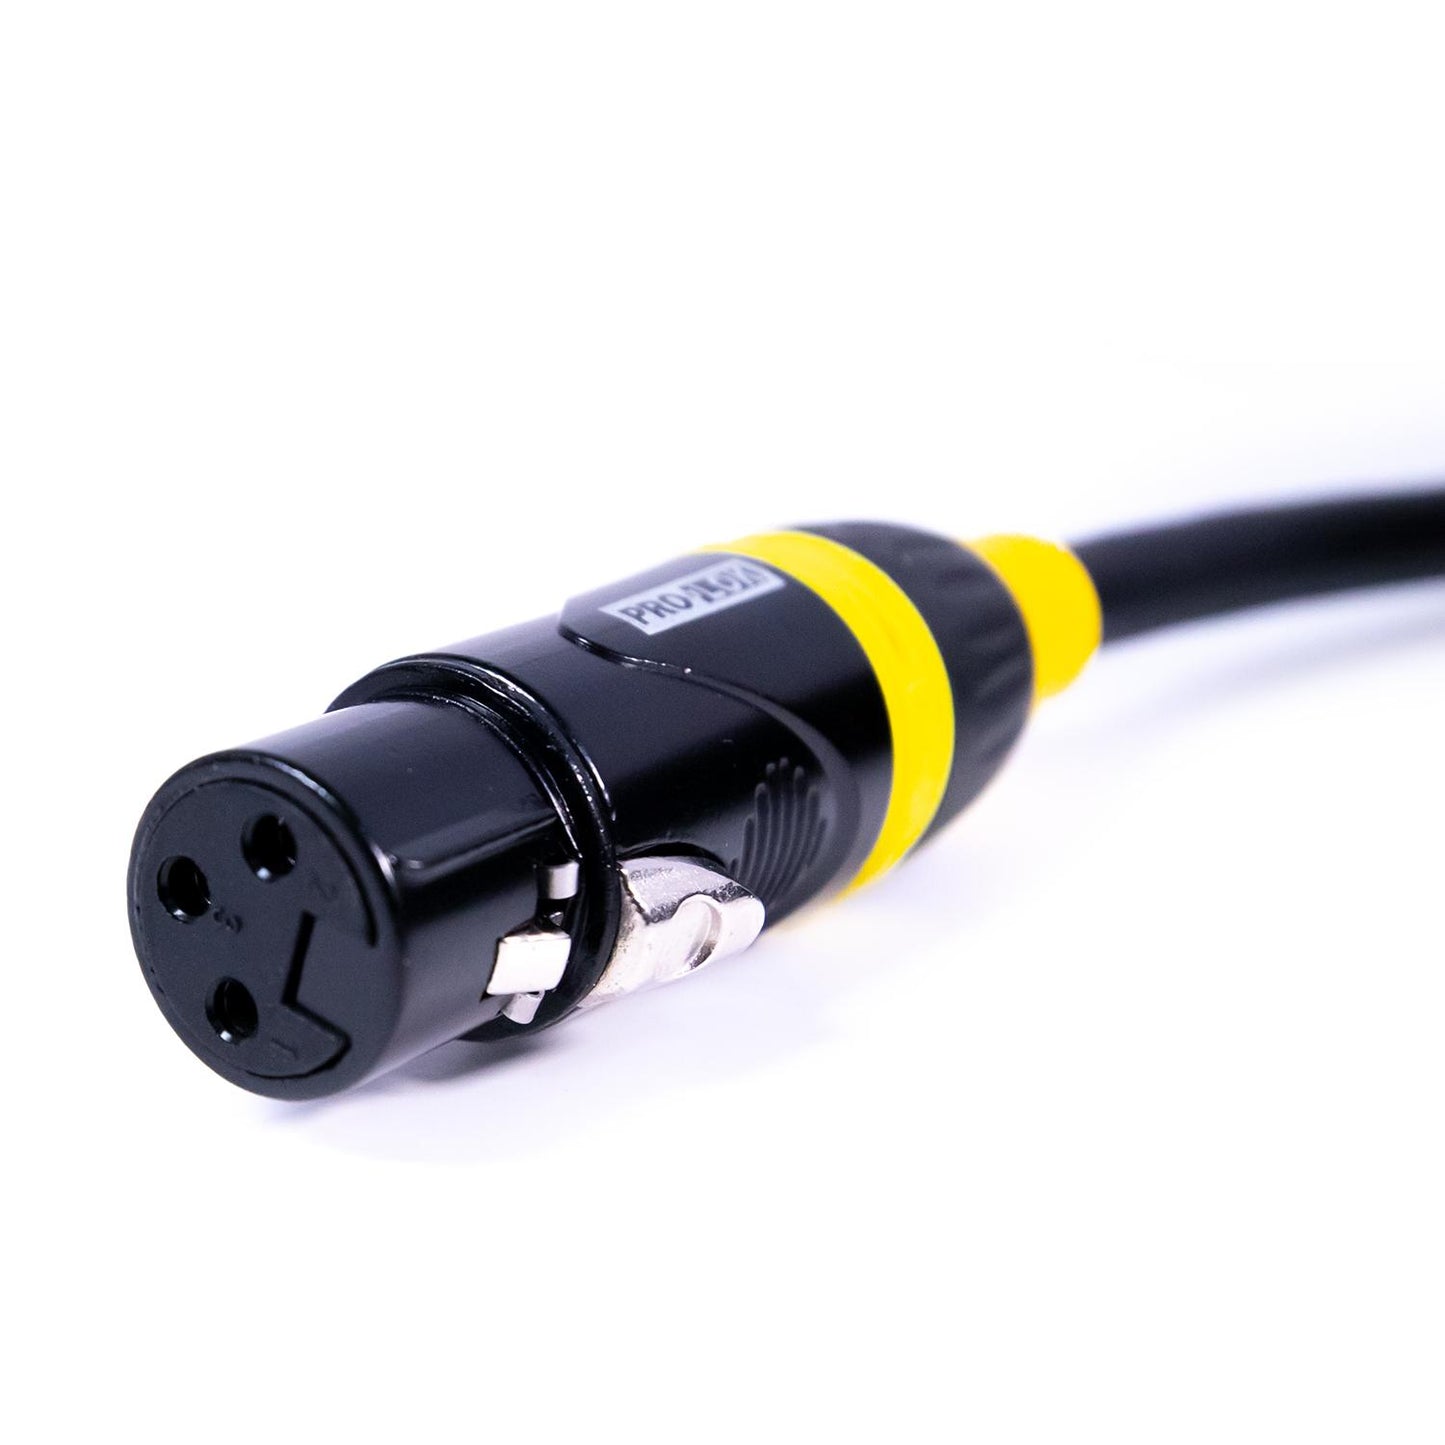 Cable para micrófono 50" PROS50-MIC TROPICAL